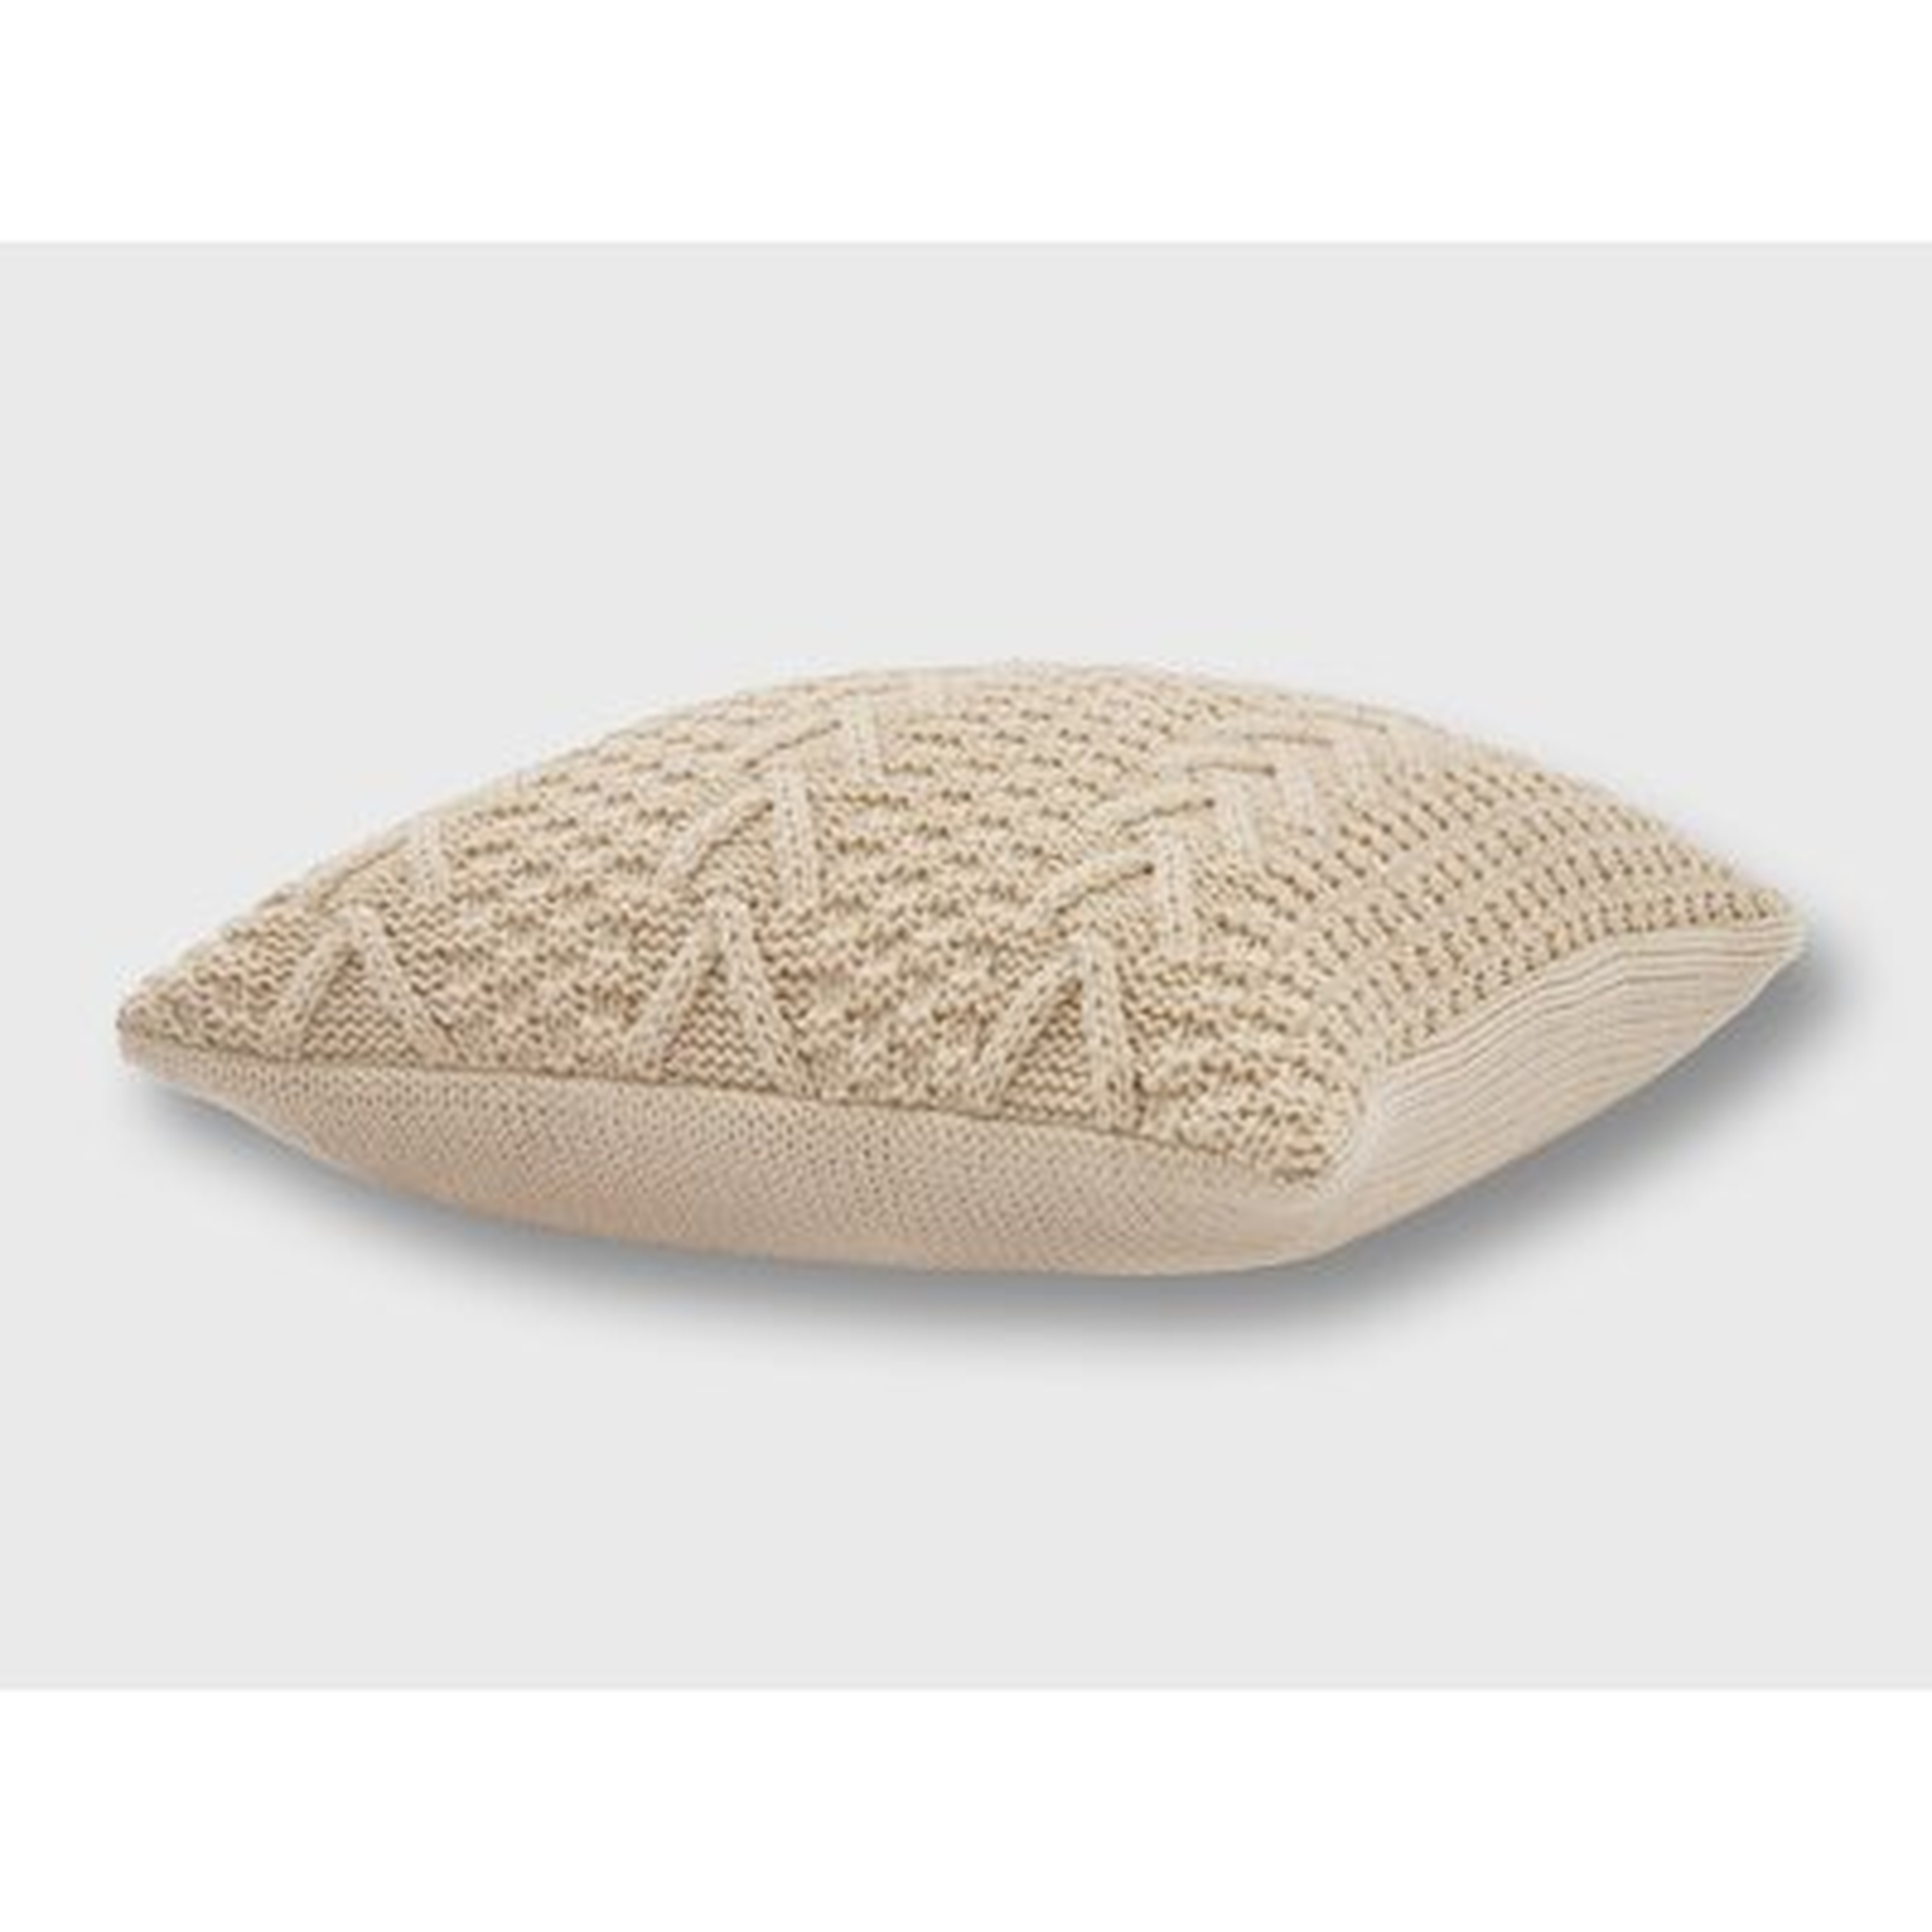 Ratree Chunky Sweater Knit Pillow - Wayfair